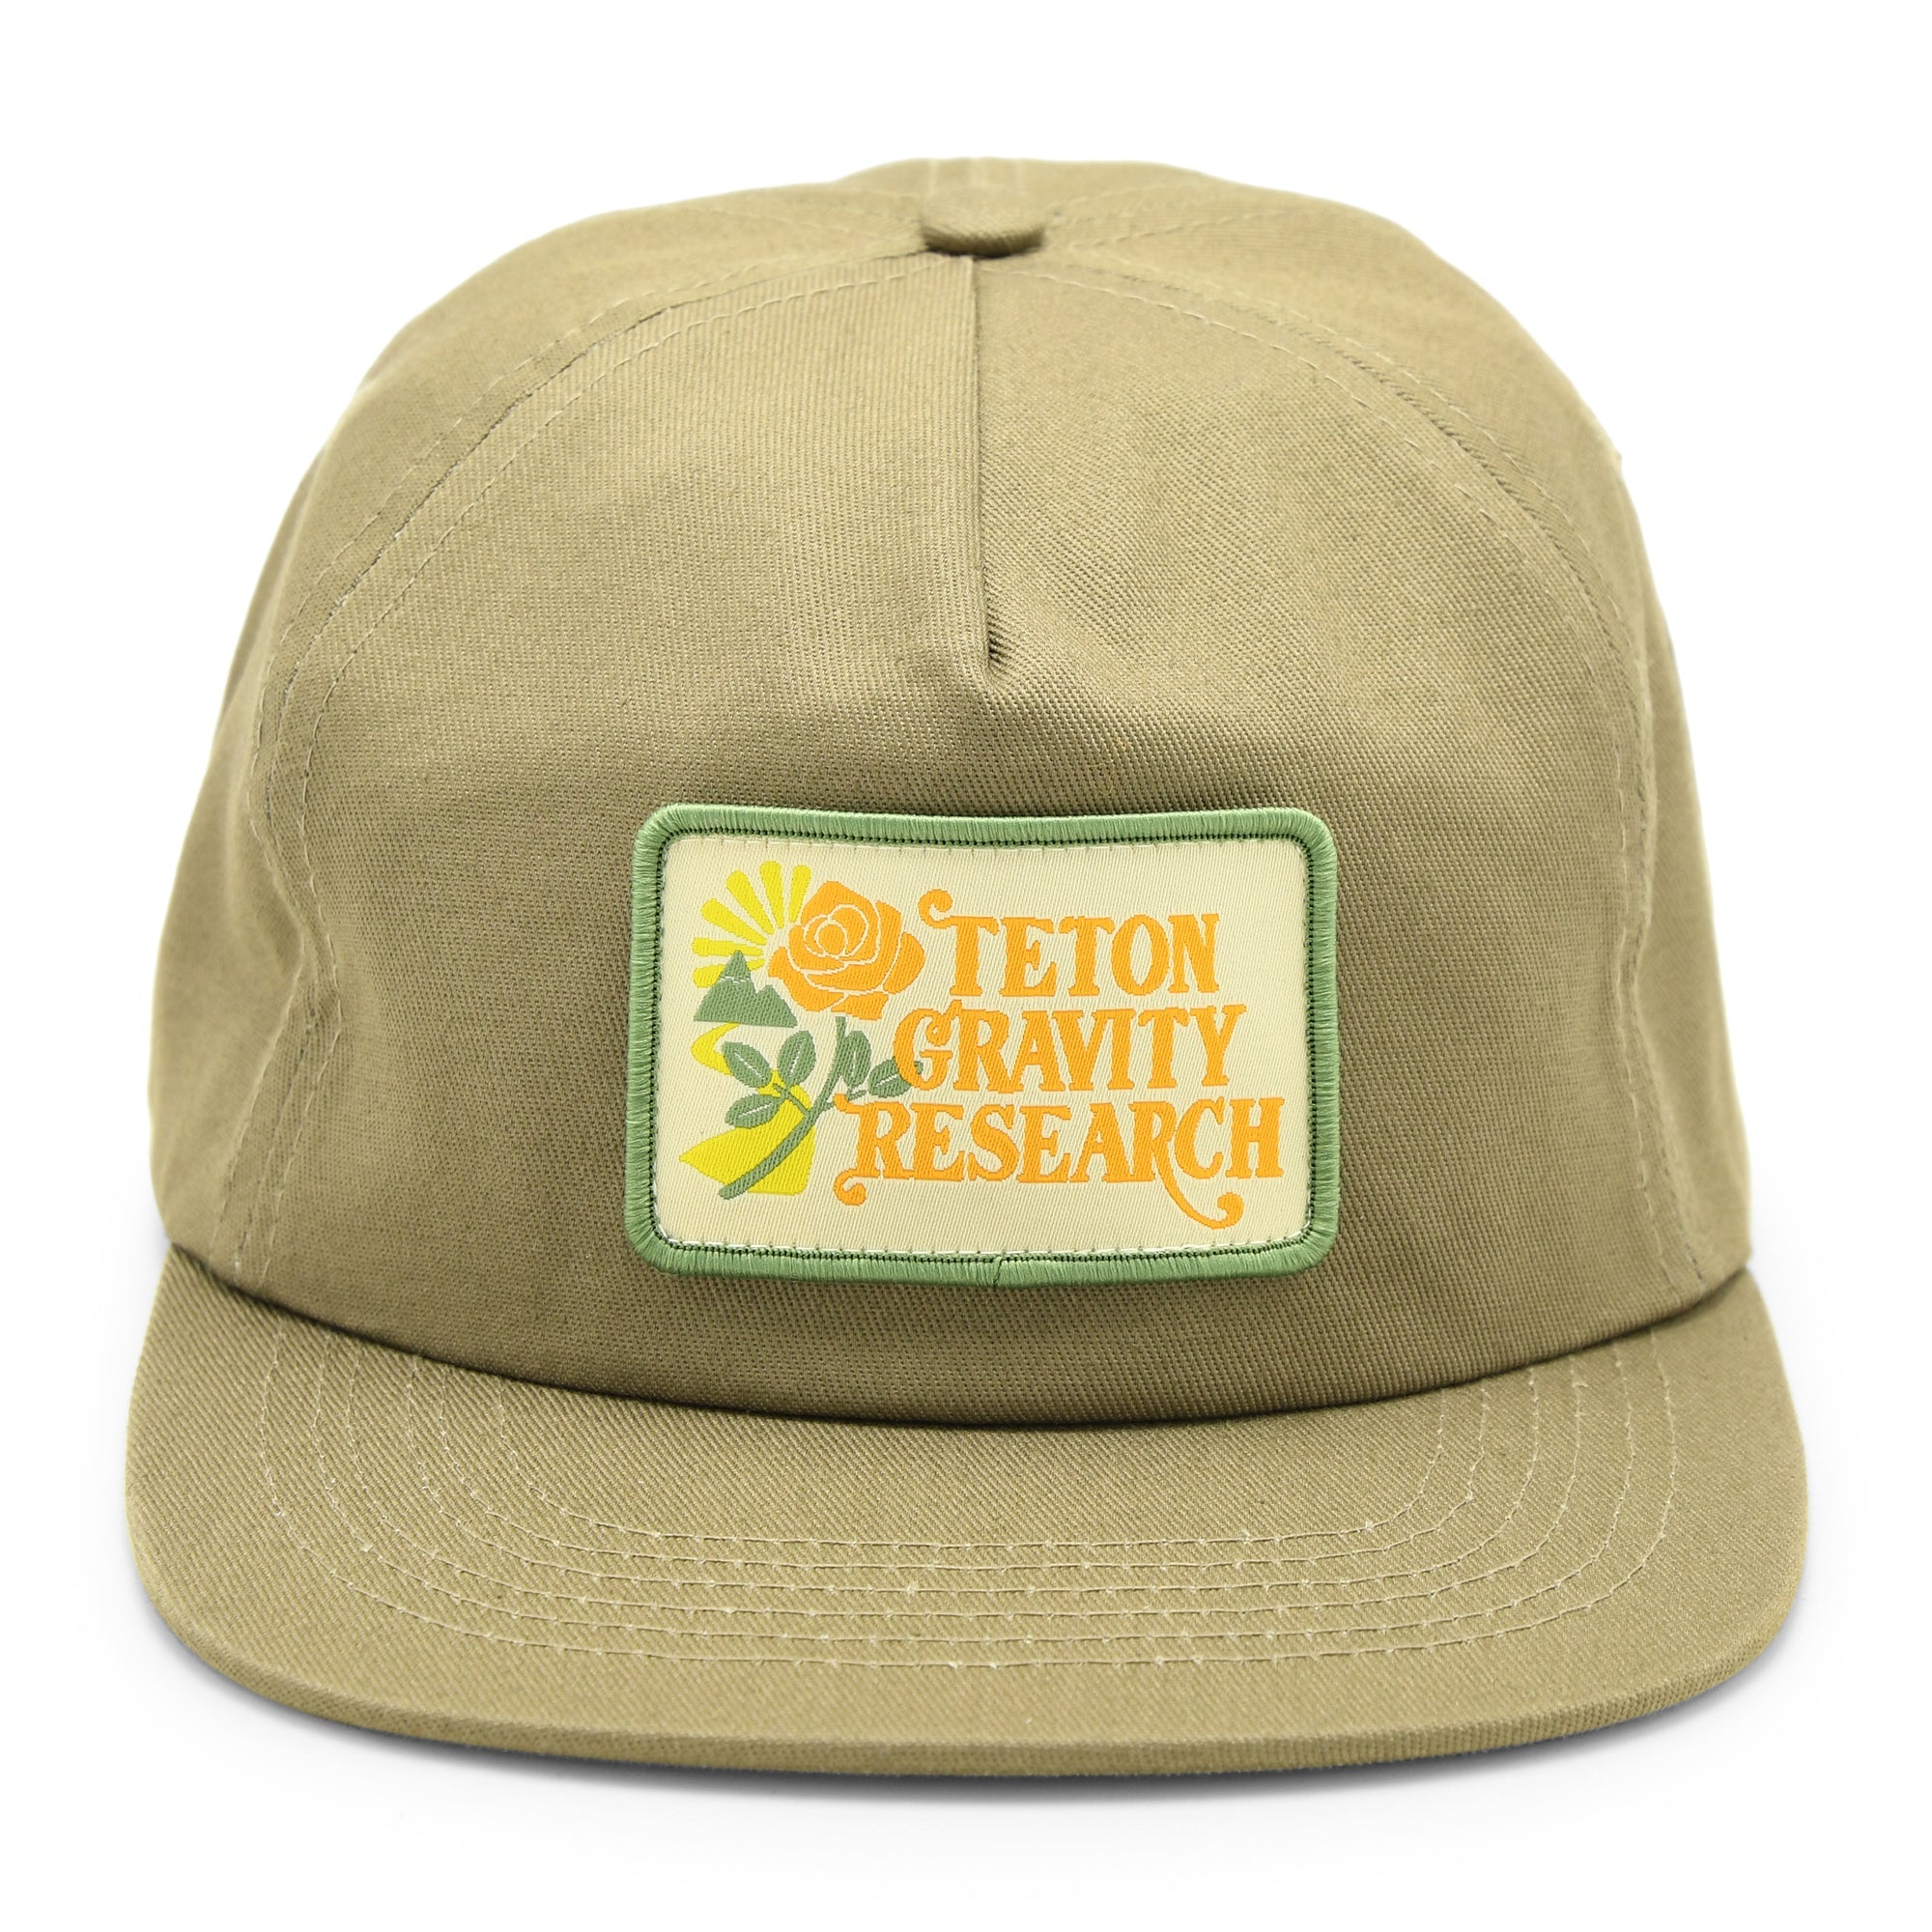 "Have A TGR Day" Hat by Yusuke Komori - Teton Gravity Research